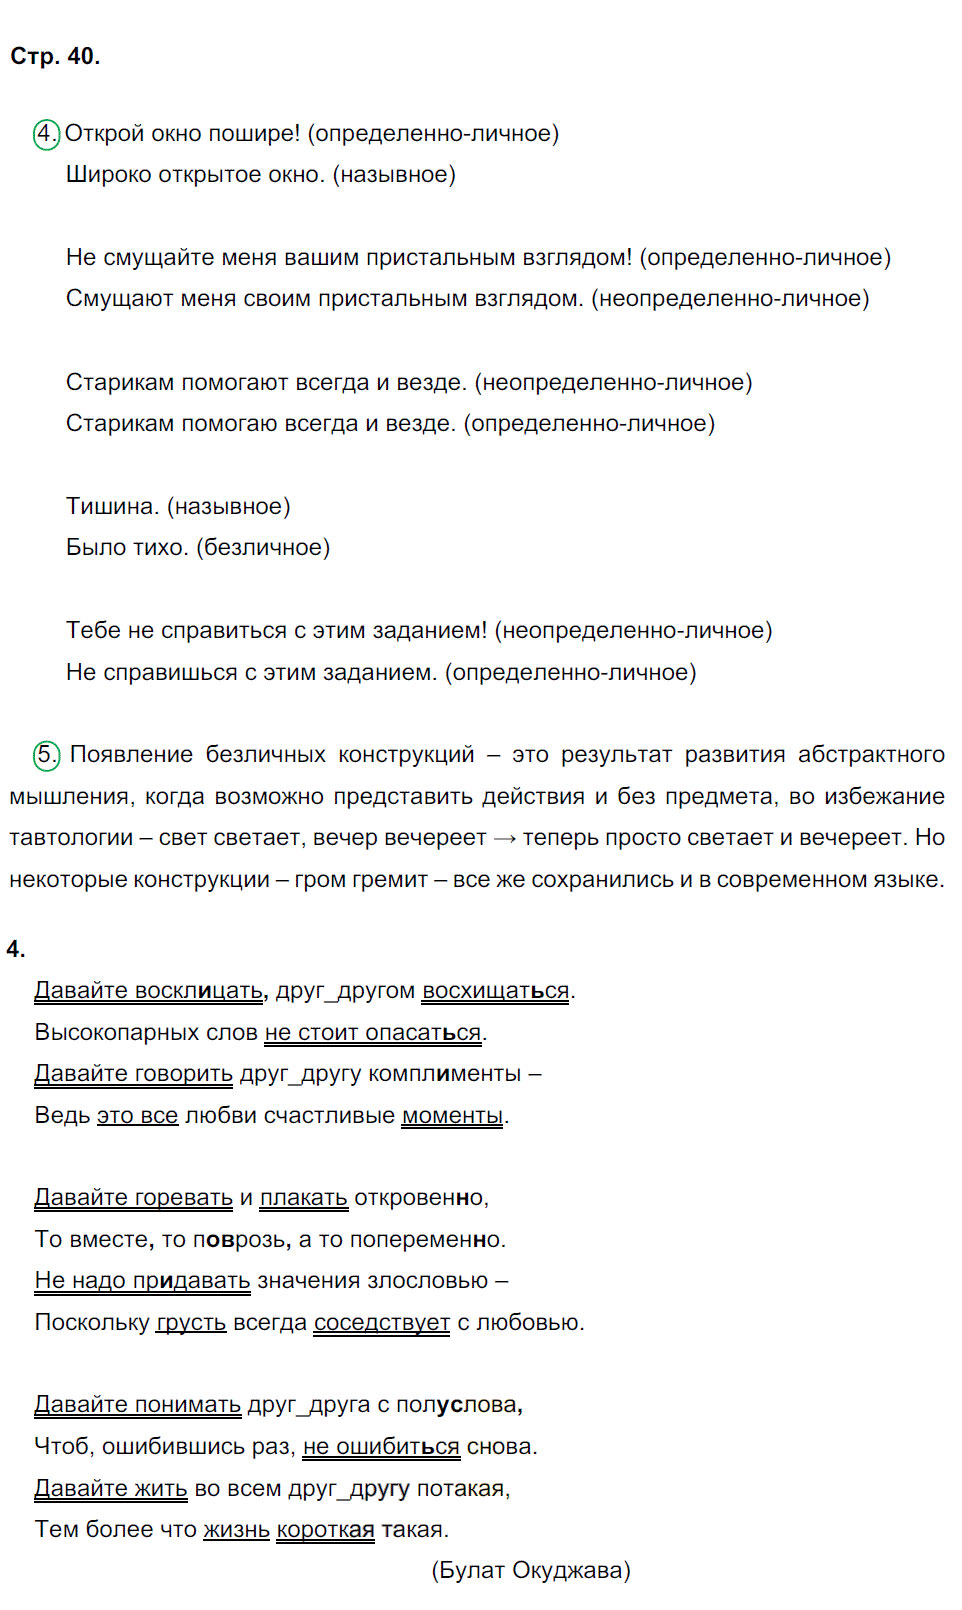 гдз 8 класс рабочая тетрадь страница 40 русский язык Ерохина